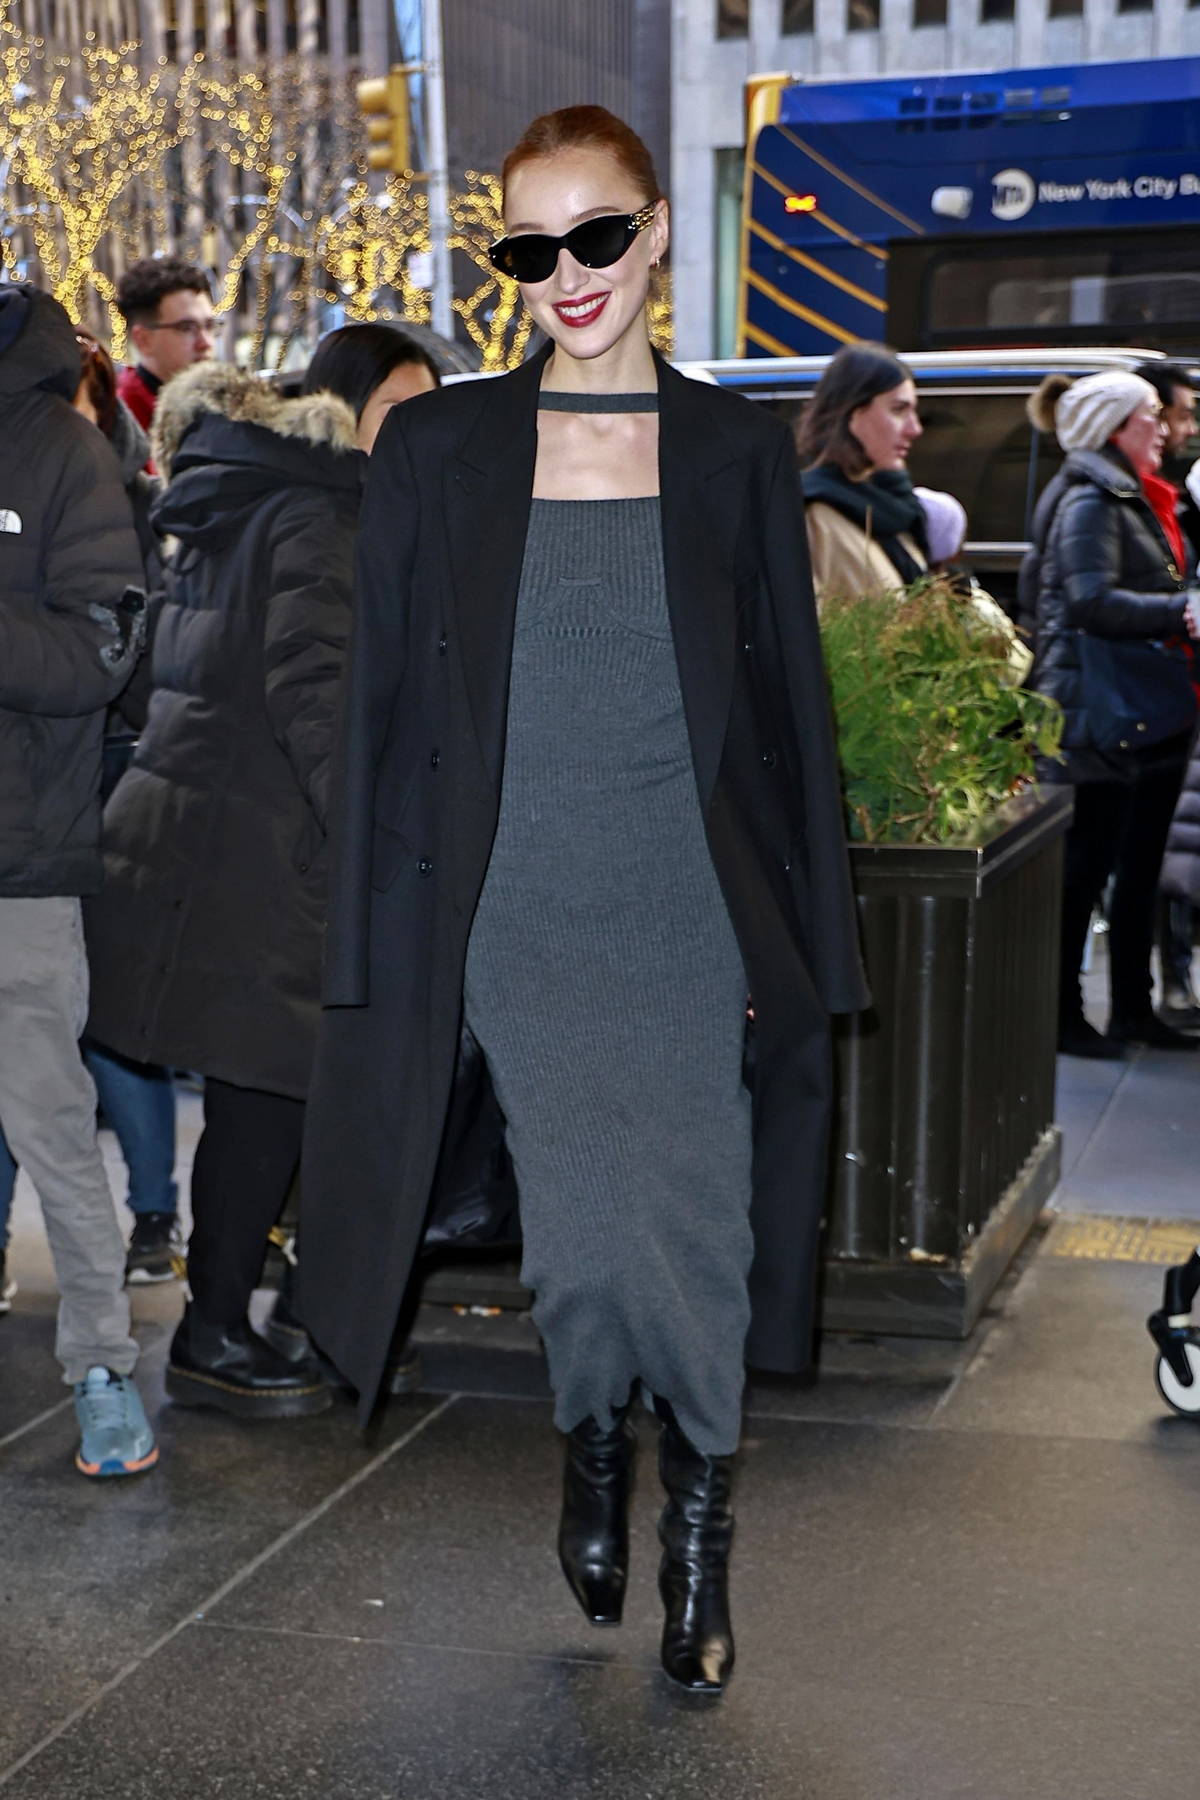 Olivia Wilde rocks a black hoodie and dark grey leggings as she